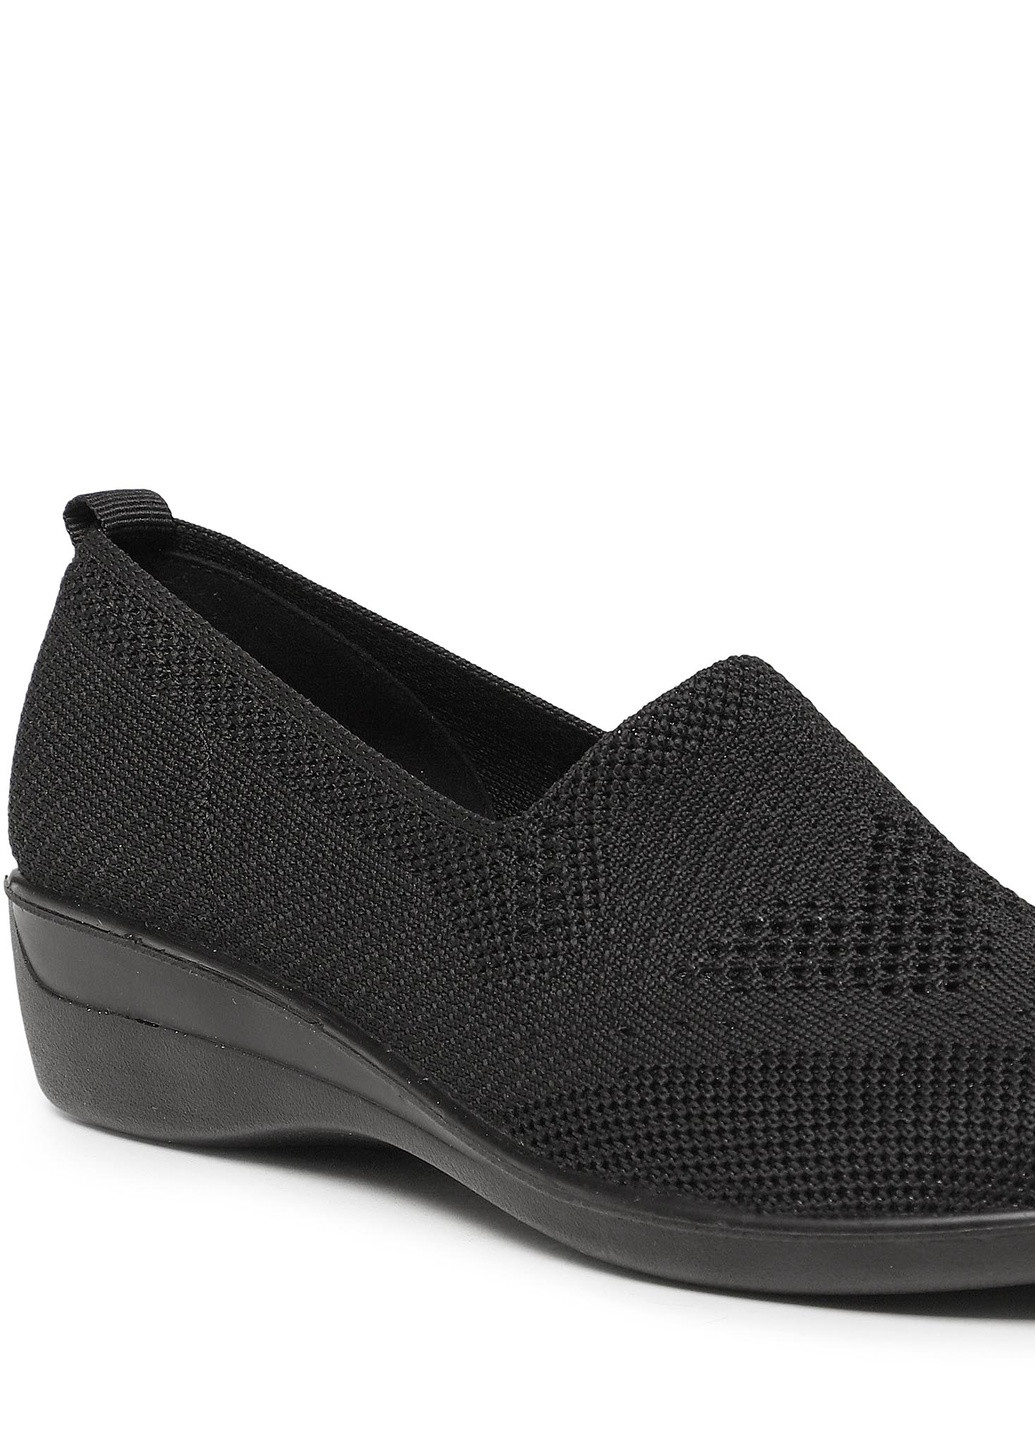 Черные осенние туфлі hmd220355-01 Clara Barson